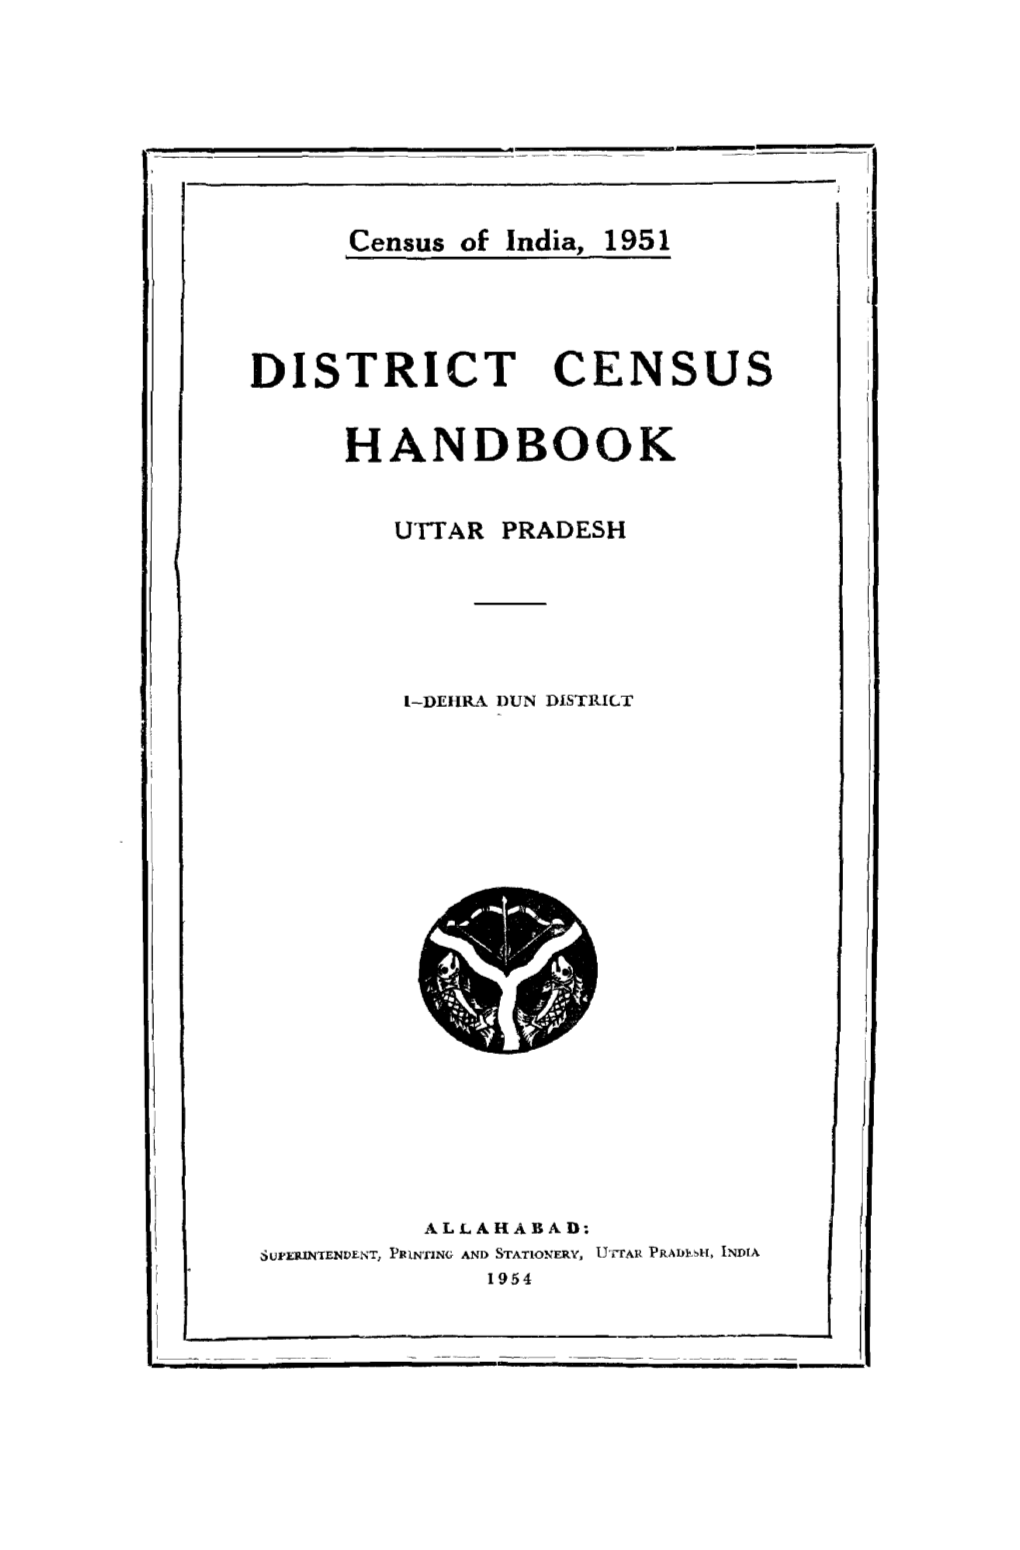 District Census Handbook, 1-Dehra Dun, Uttar Pradesh